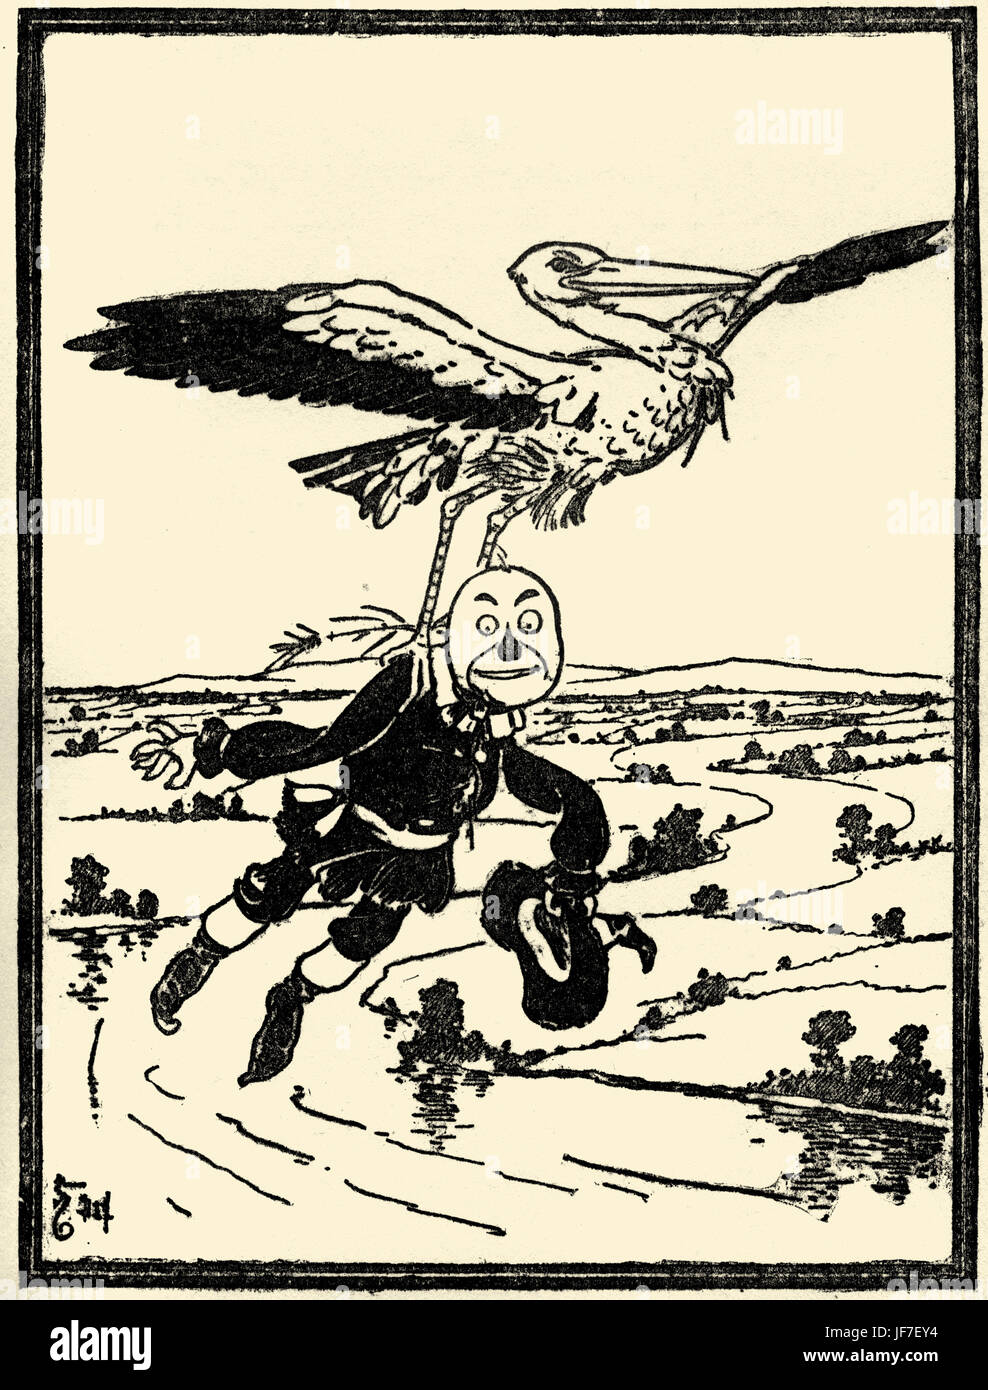 Der Zauberer von Oz von L. Frank Baum Buch. Illustration von w. Denslow. Bildunterschrift: Der Storch trug ihn bis in die Luft. (Vogelscheuche) Herausgegeben von Bobbs-Merill. US-amerikanischer Autor, 15. Mai 1856 – 6. Mai 1919 Stockfoto